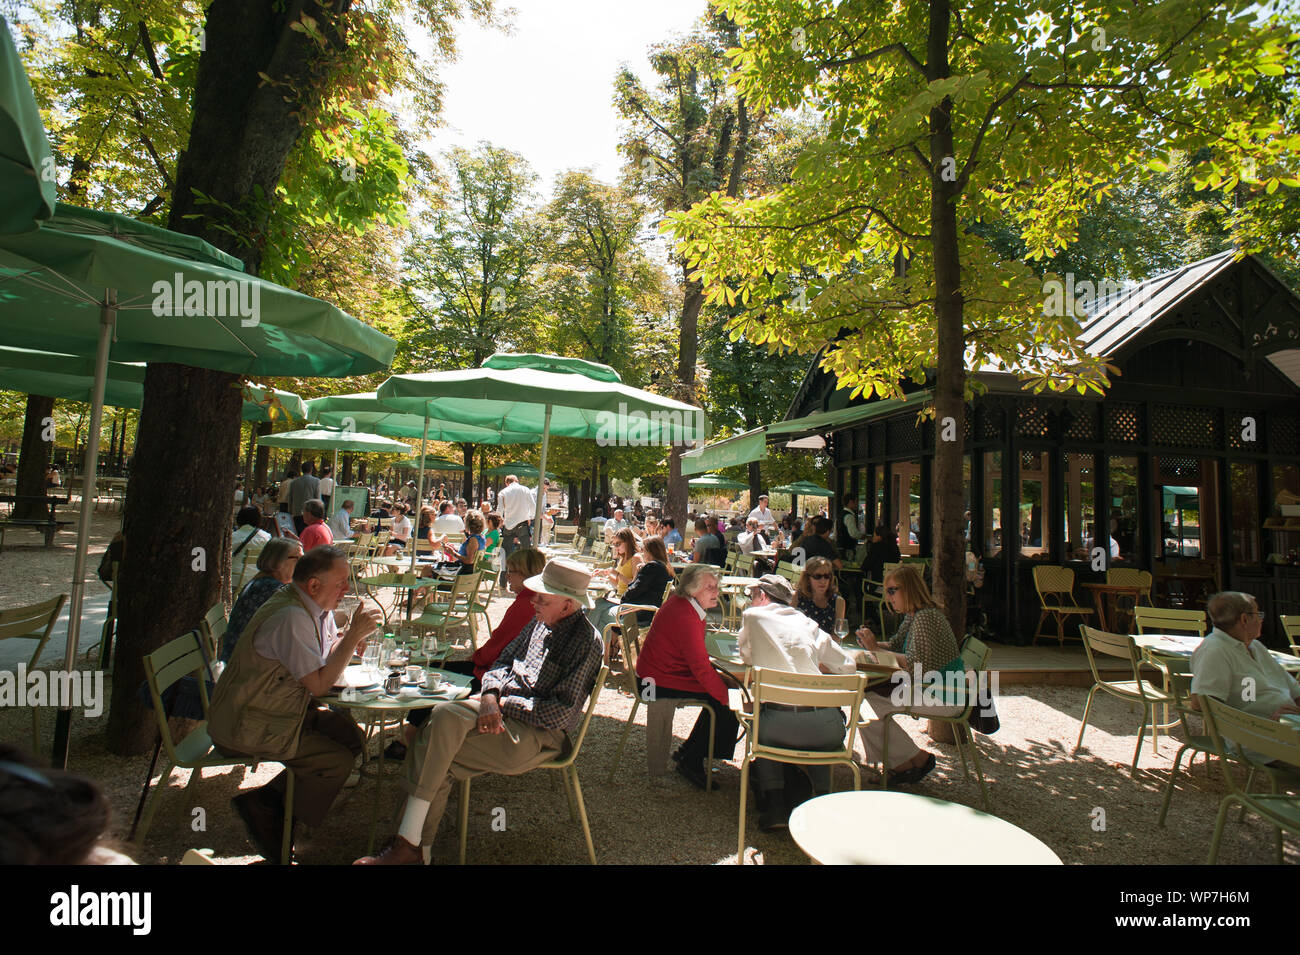 Der Jardin du Luxembourg ist ein früher königlicher, heute staatlicher Schlosspark im Pariser Quartier Latin mit einer Fläche von 26 Hektar. Die Anlag Stock Photo